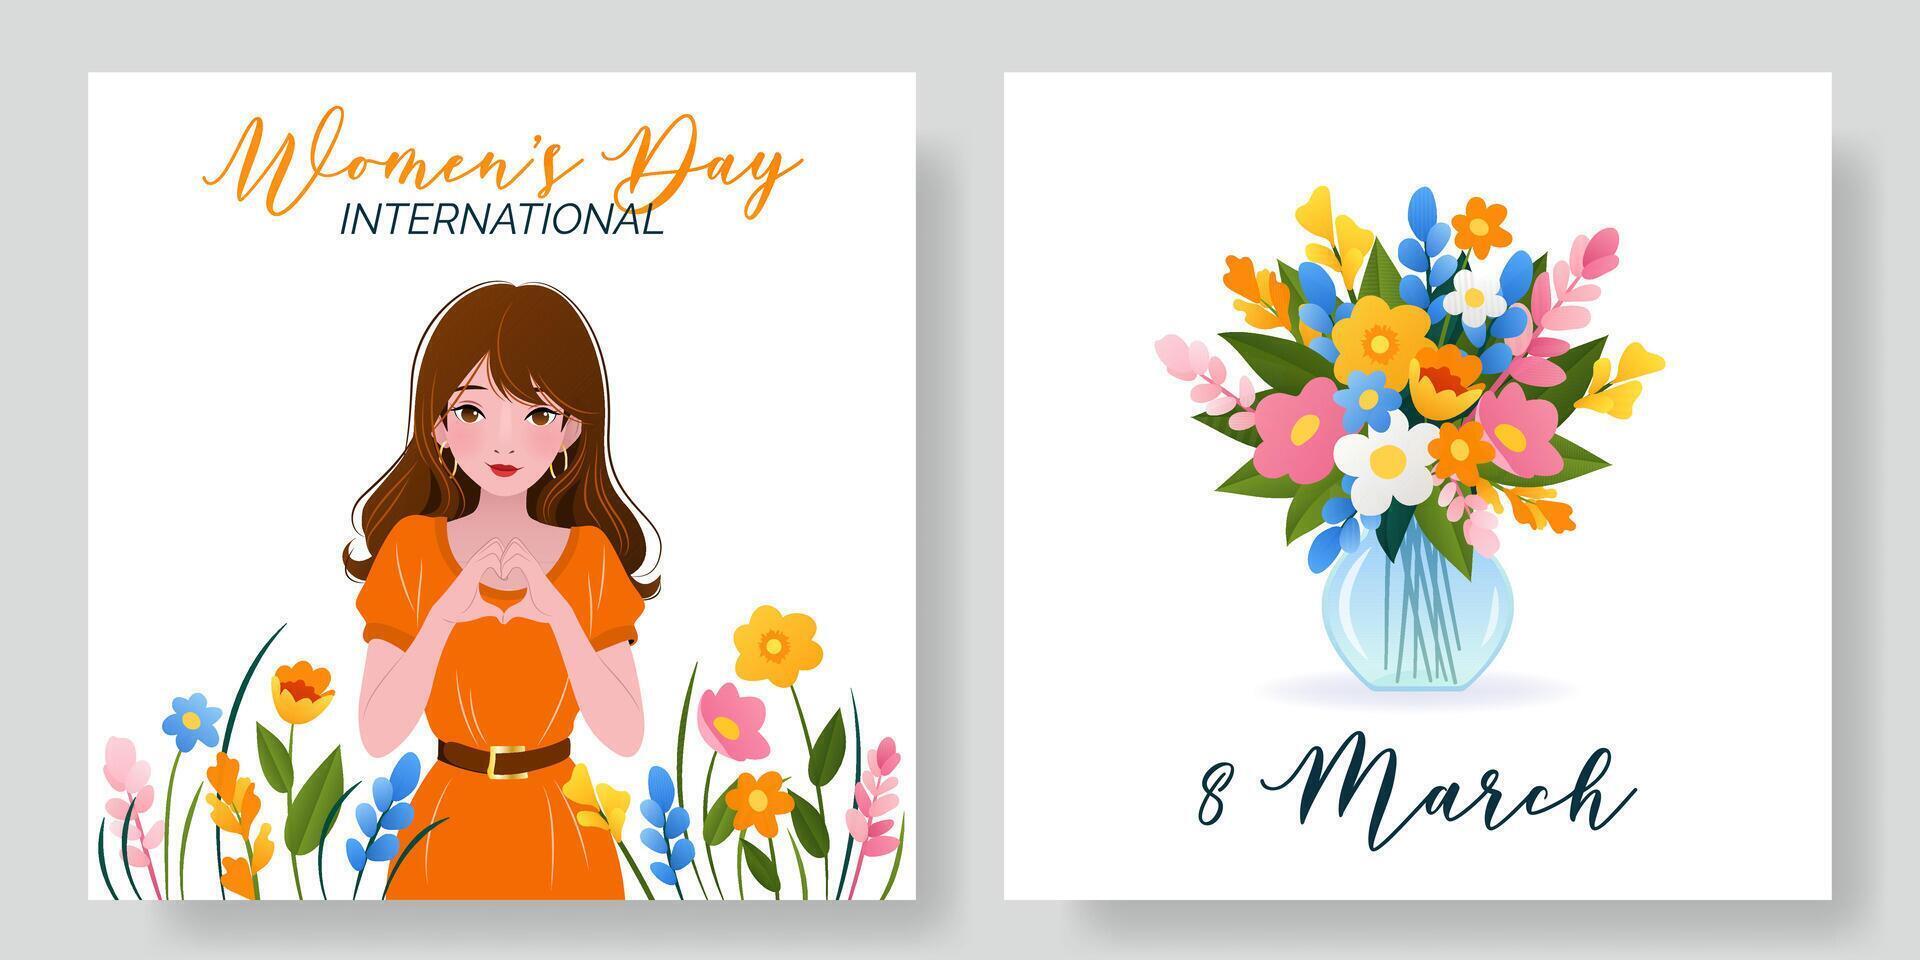 Internationale vrouwen dag plein banners set. 8 maart. portret van vrouw met voorjaar bloemen. boeket van bloemen in vaas. ontwerp voor poster, campagne, sociaal media na, ansichtkaart. vector illustratie.